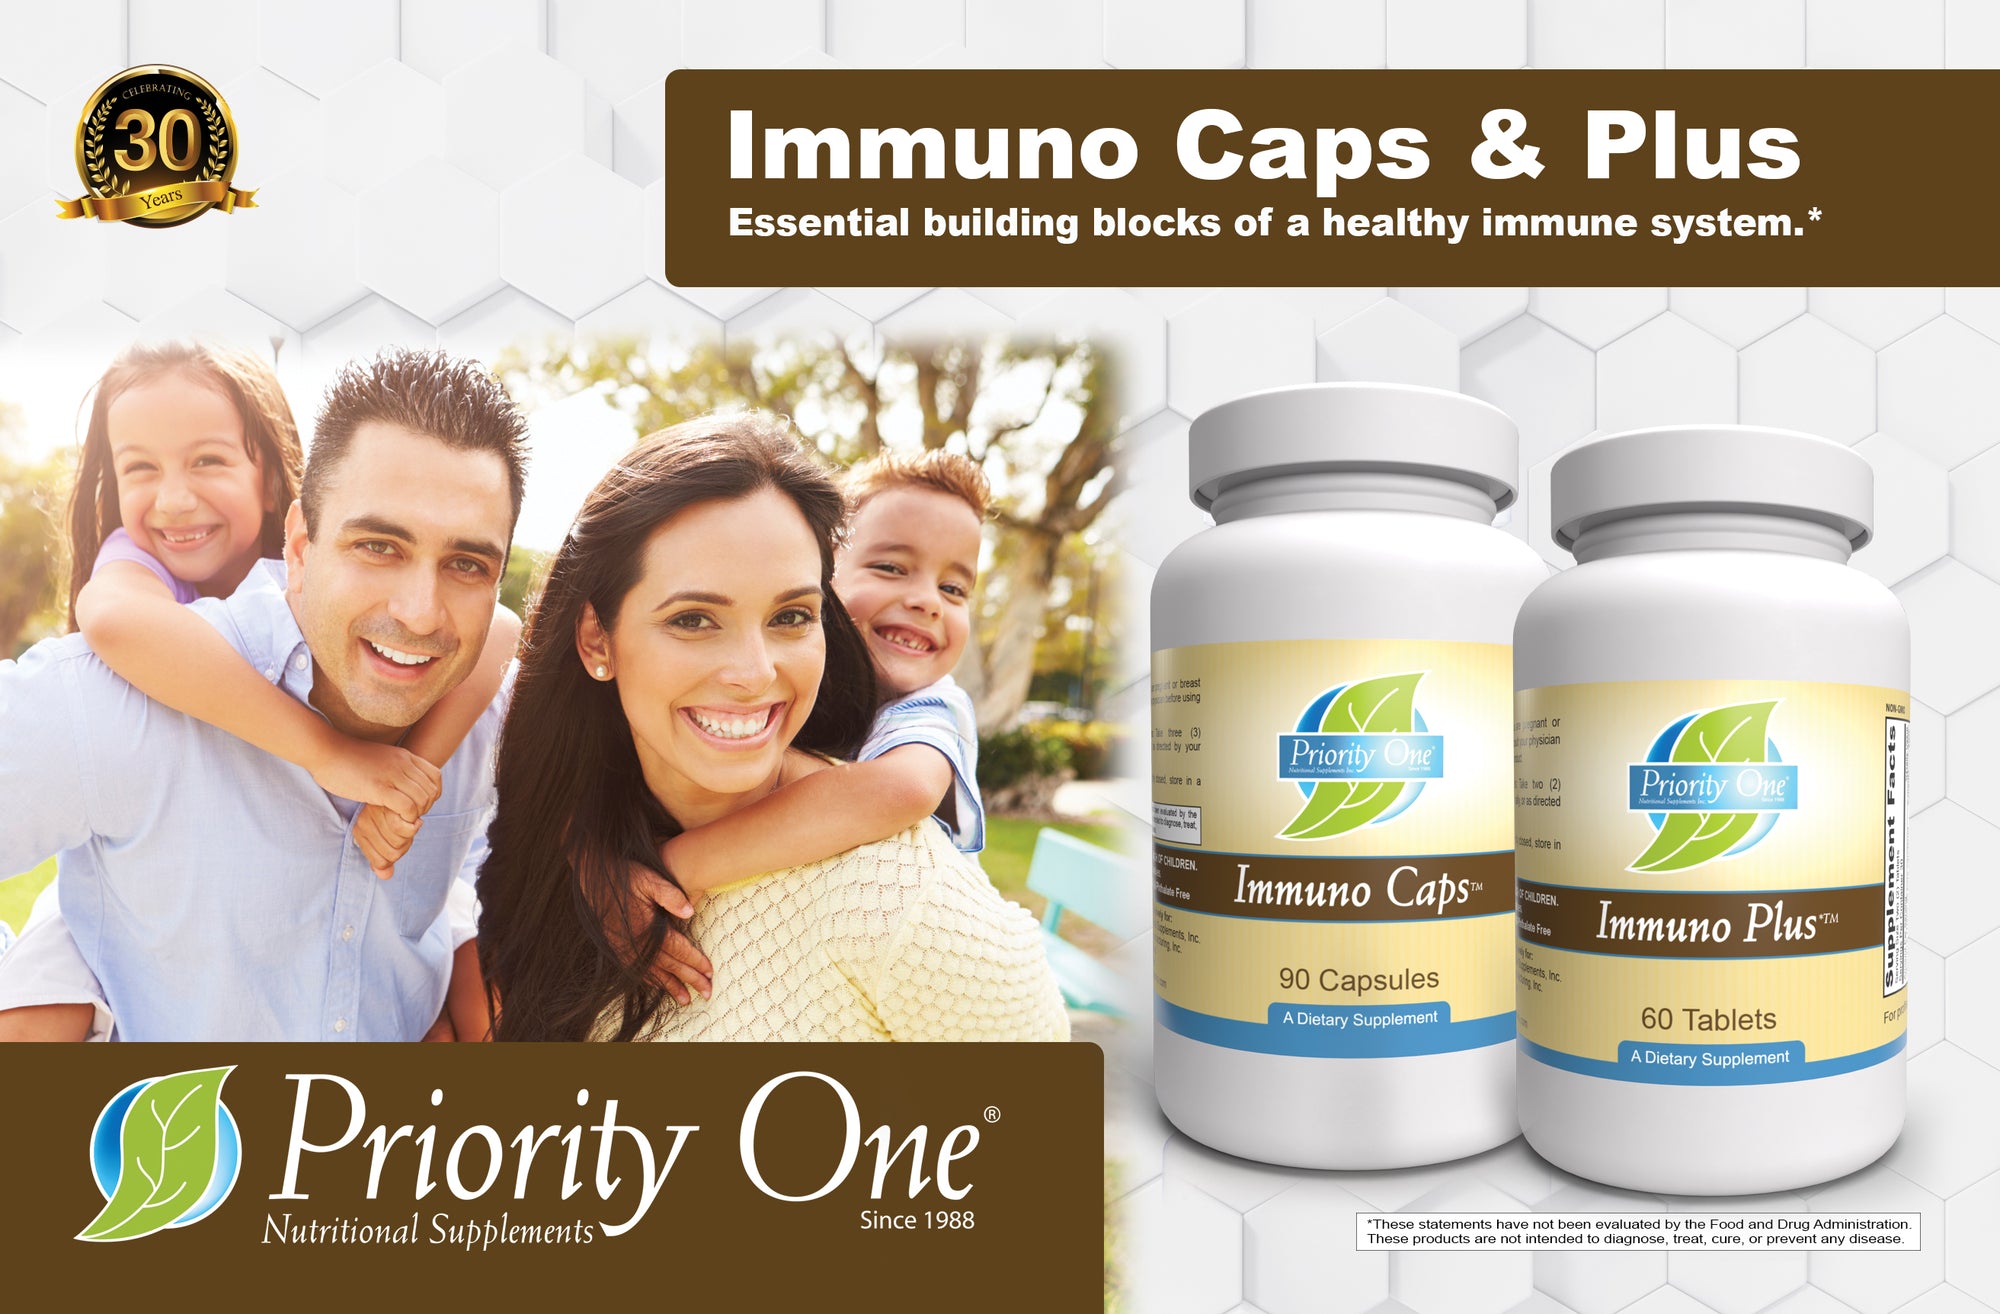 Immuno Caps (90 cápsulas) Las Immuno Caps de Priority One están diseñadas para respaldar la respuesta inmune normal del cuerpo y ayudar a mantener la actividad normal de los glóbulos blancos.*